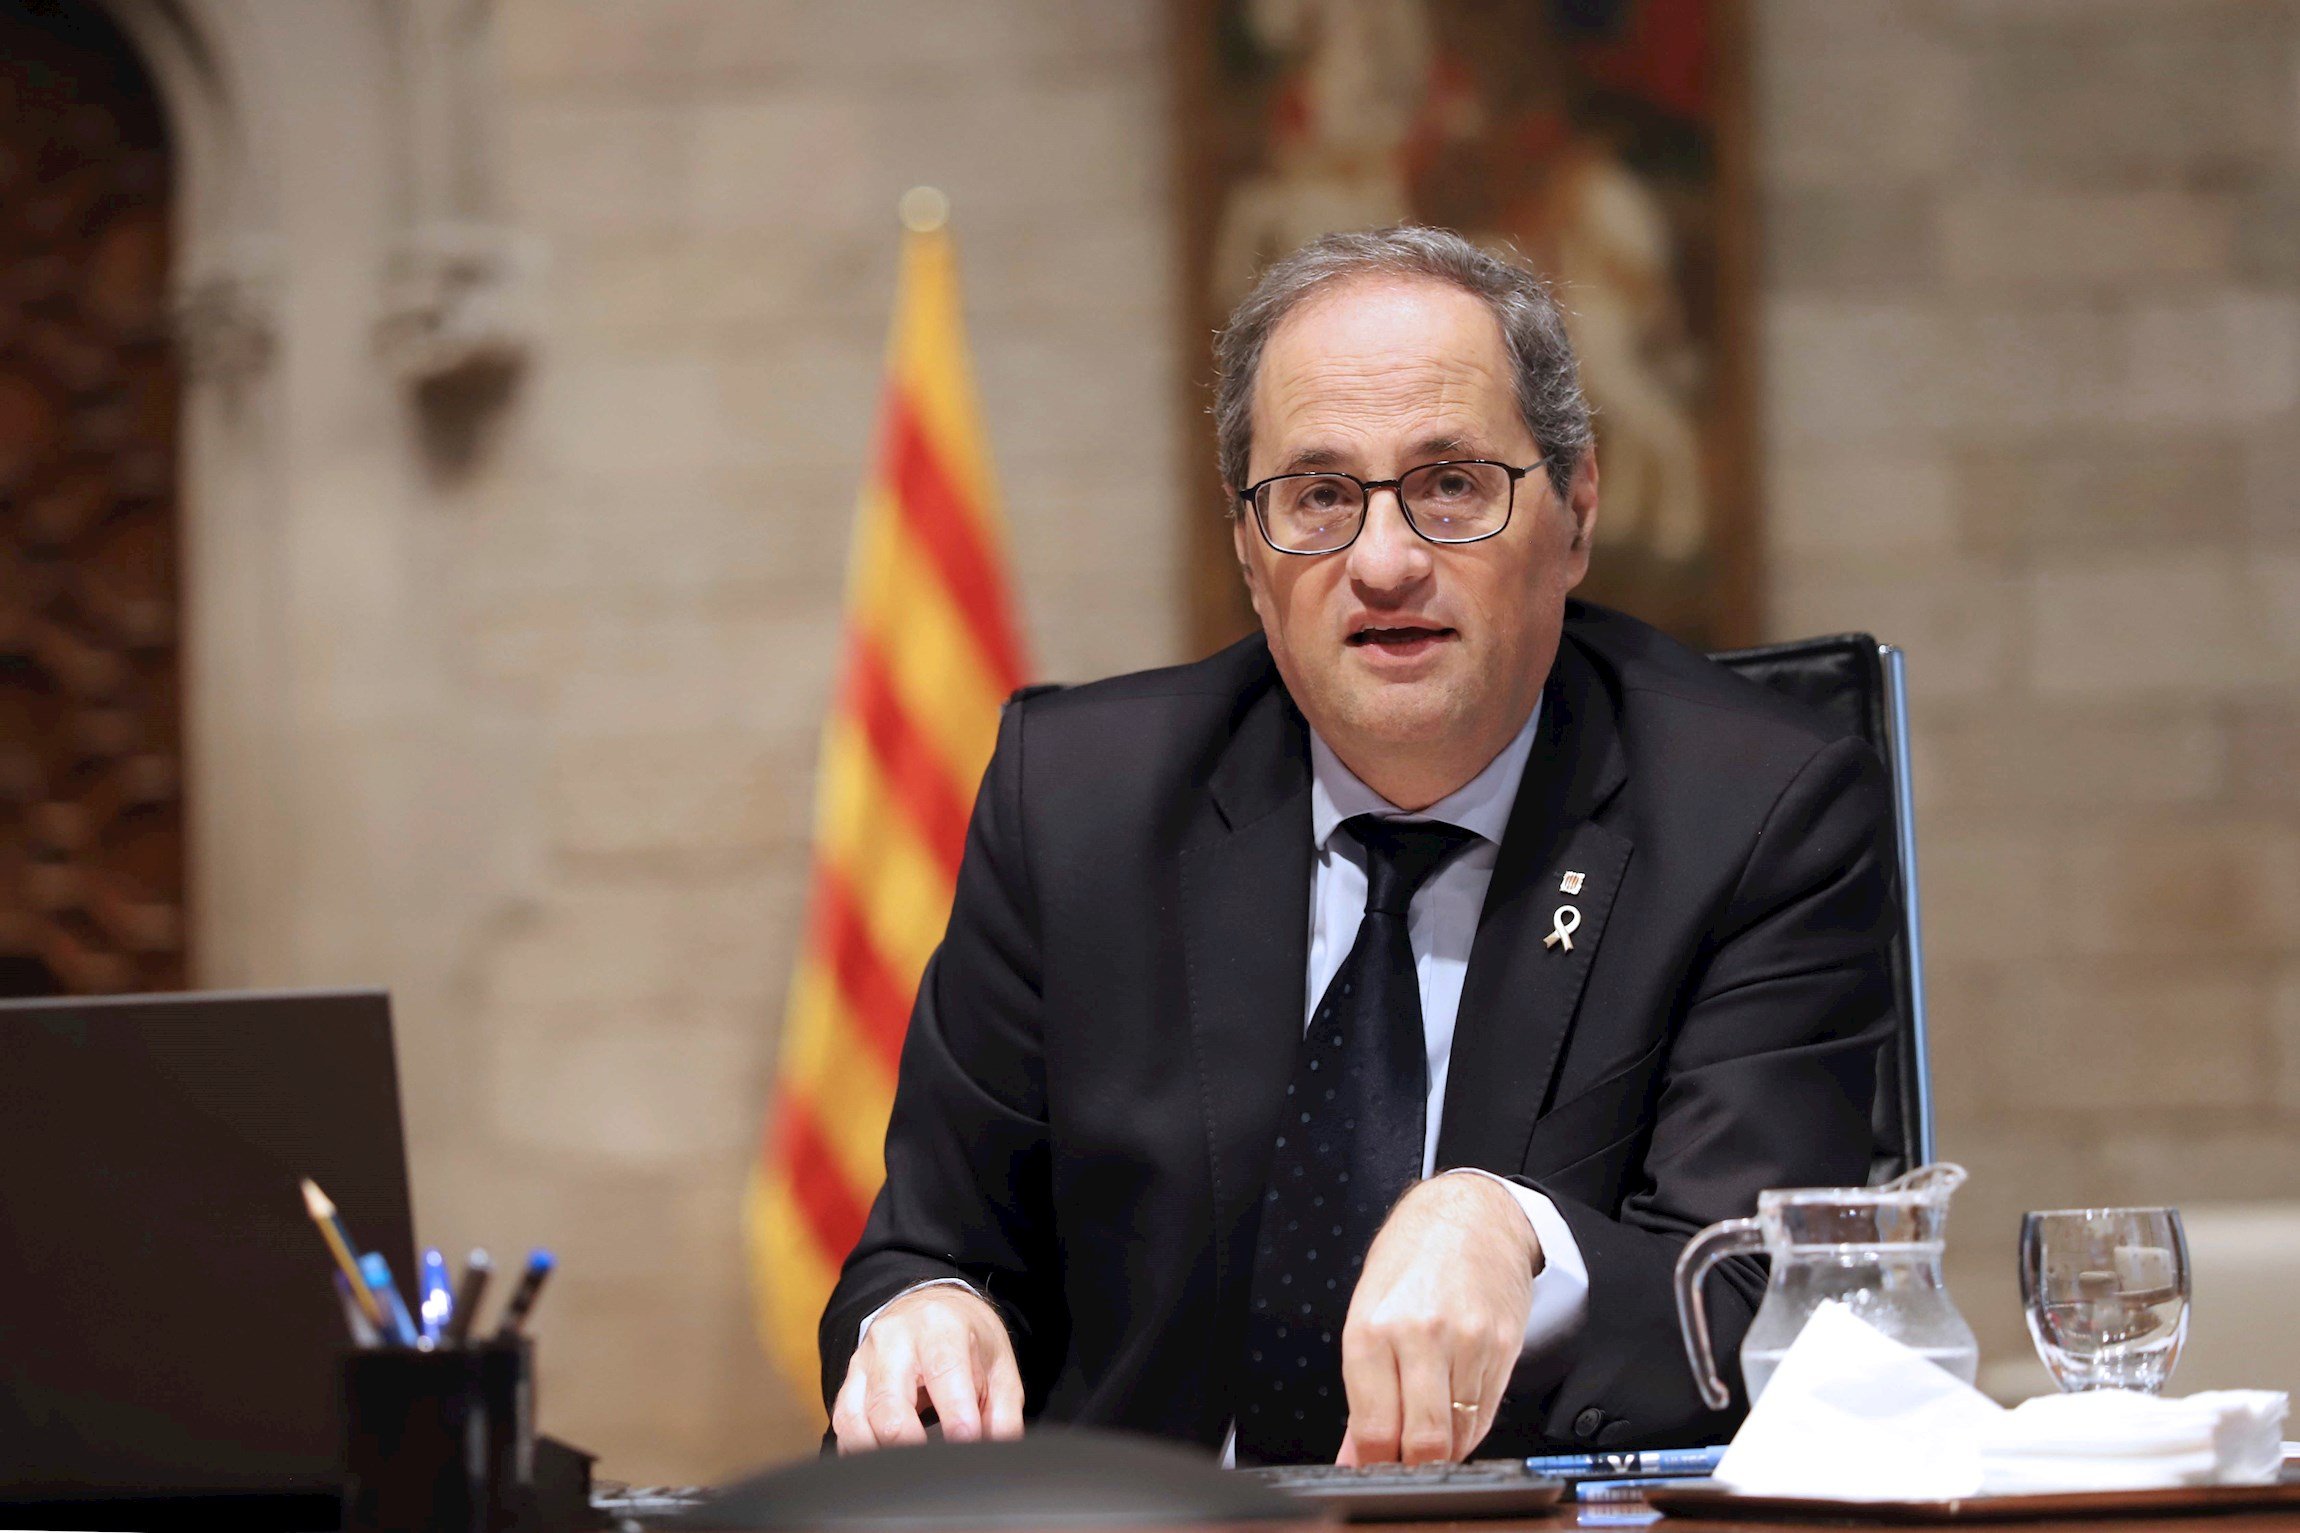 Torra presiona a Sánchez con miles de ERTE impagados a catalanes: "Reclamaremos"